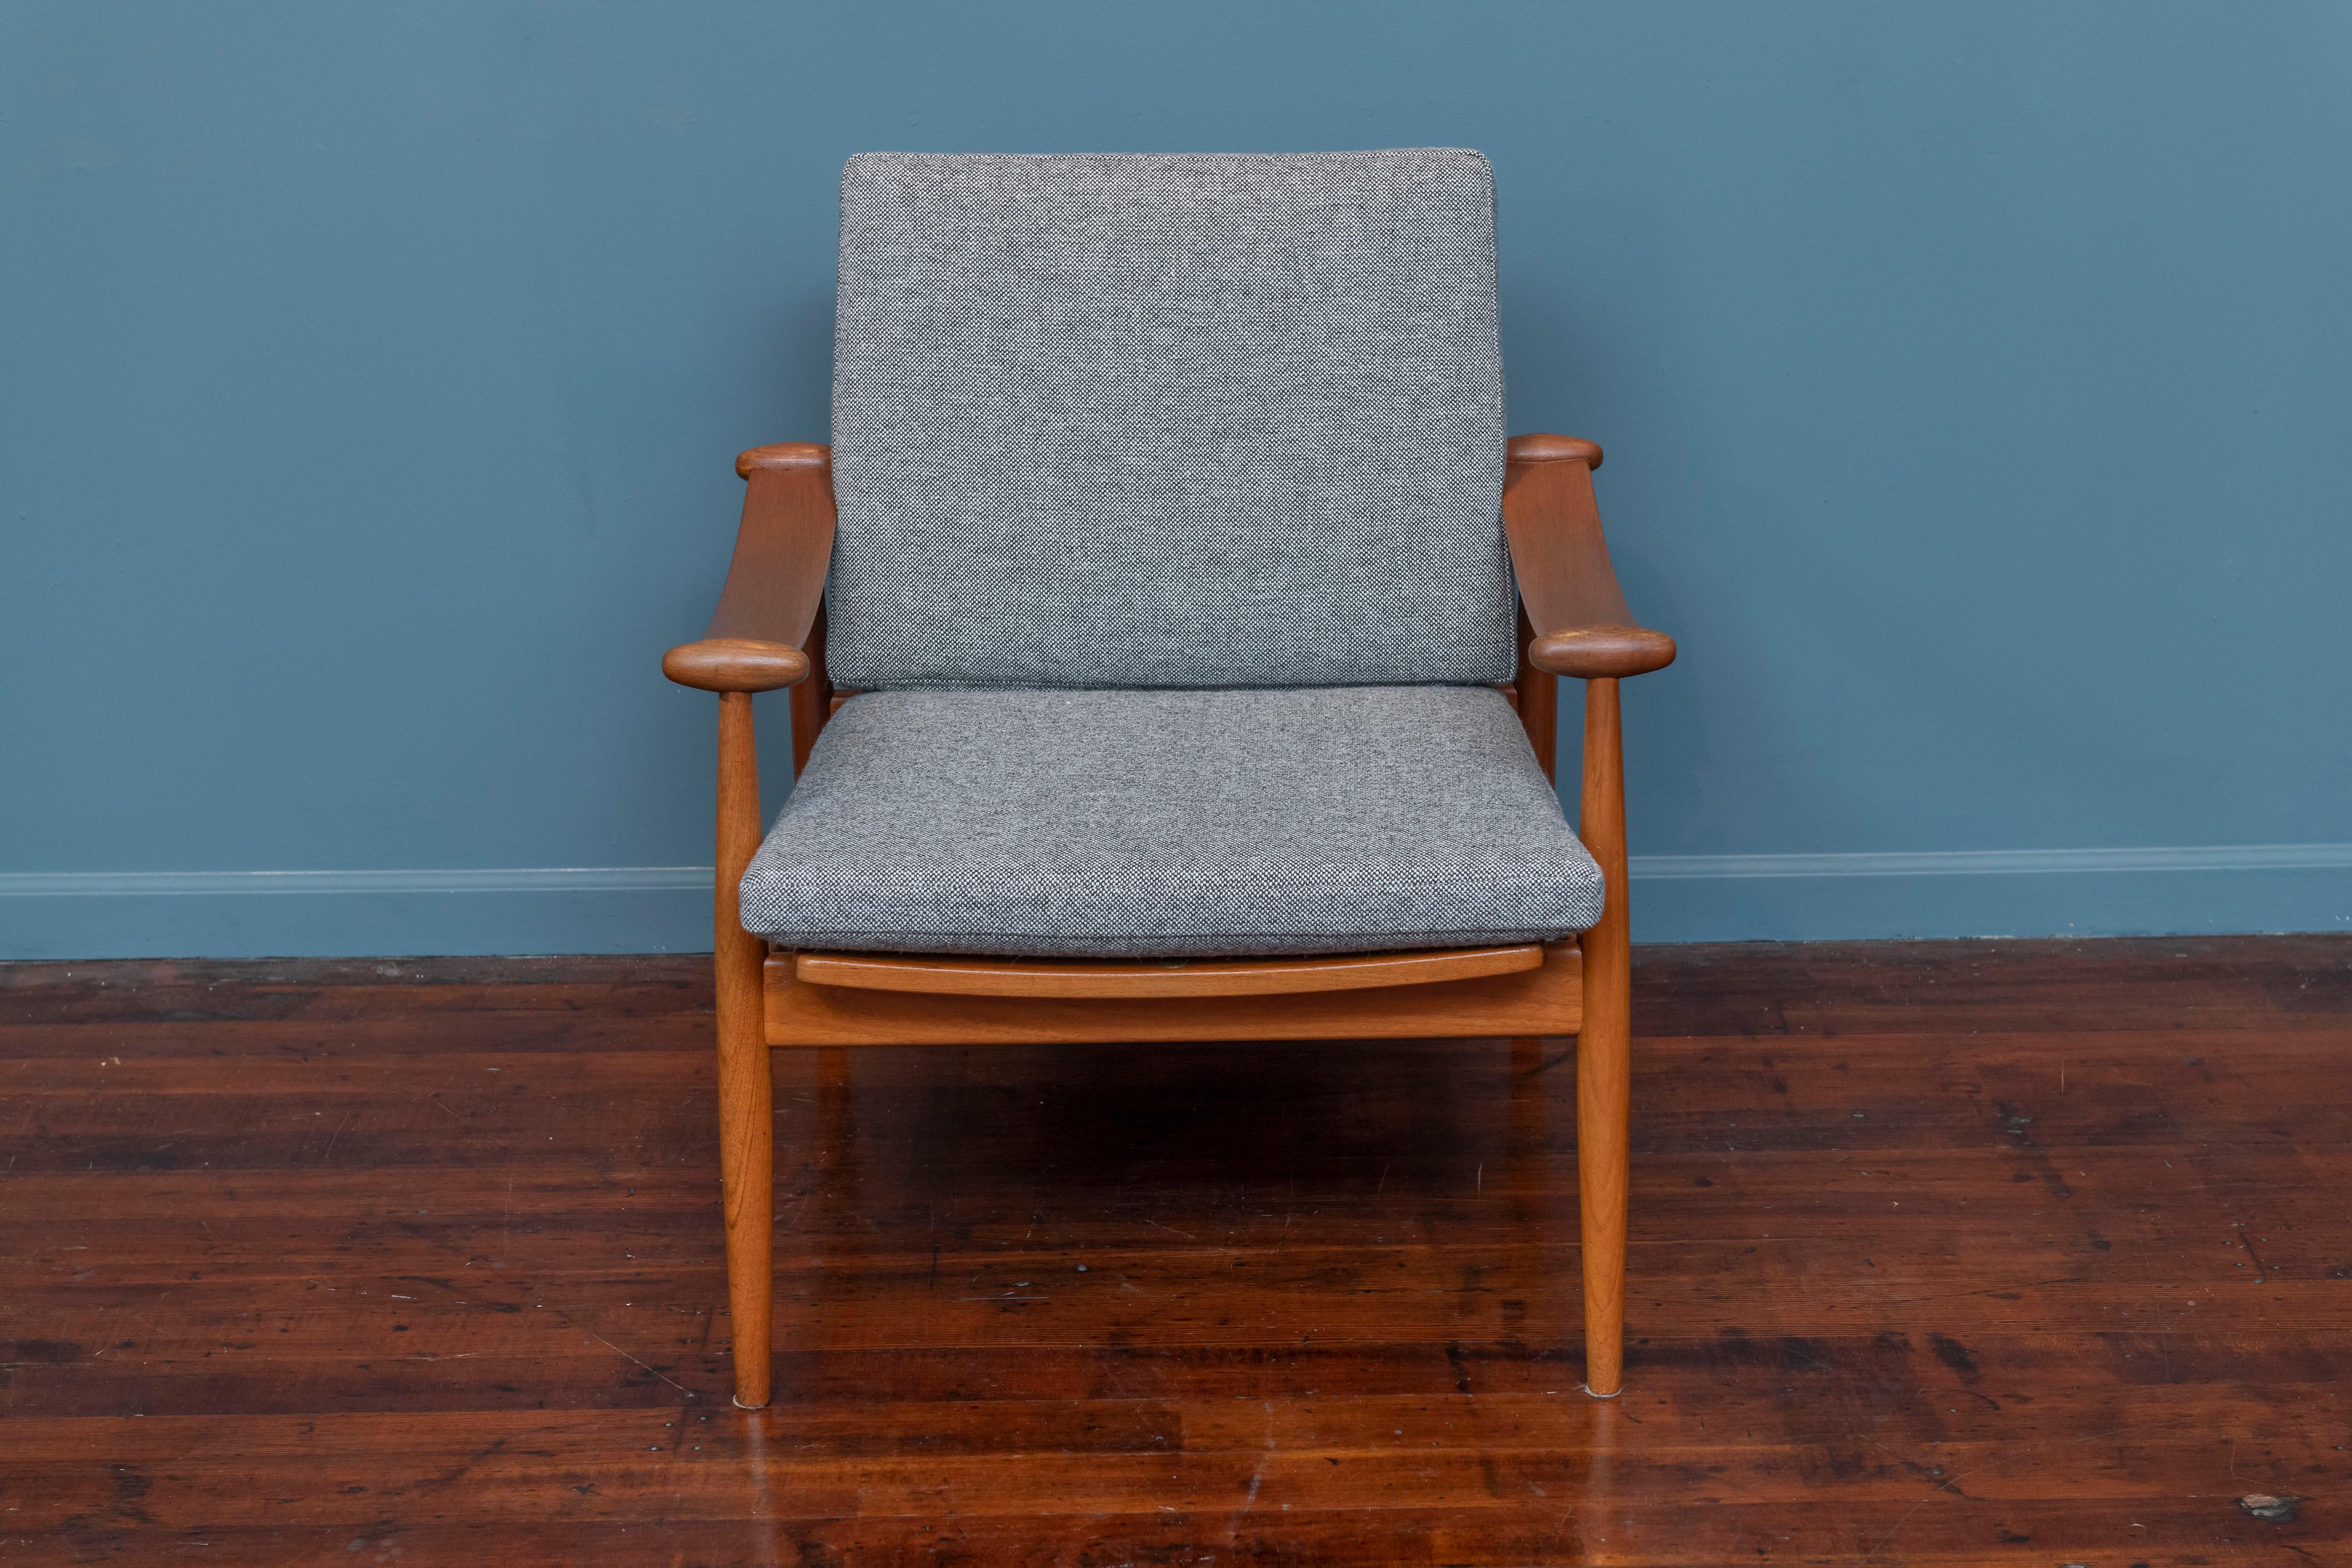 Finn Juhl design spade chair model 133 for France & Daverkosen, Denmark. Newly refinished teak frame with new cushions upholstered in Danish wool.